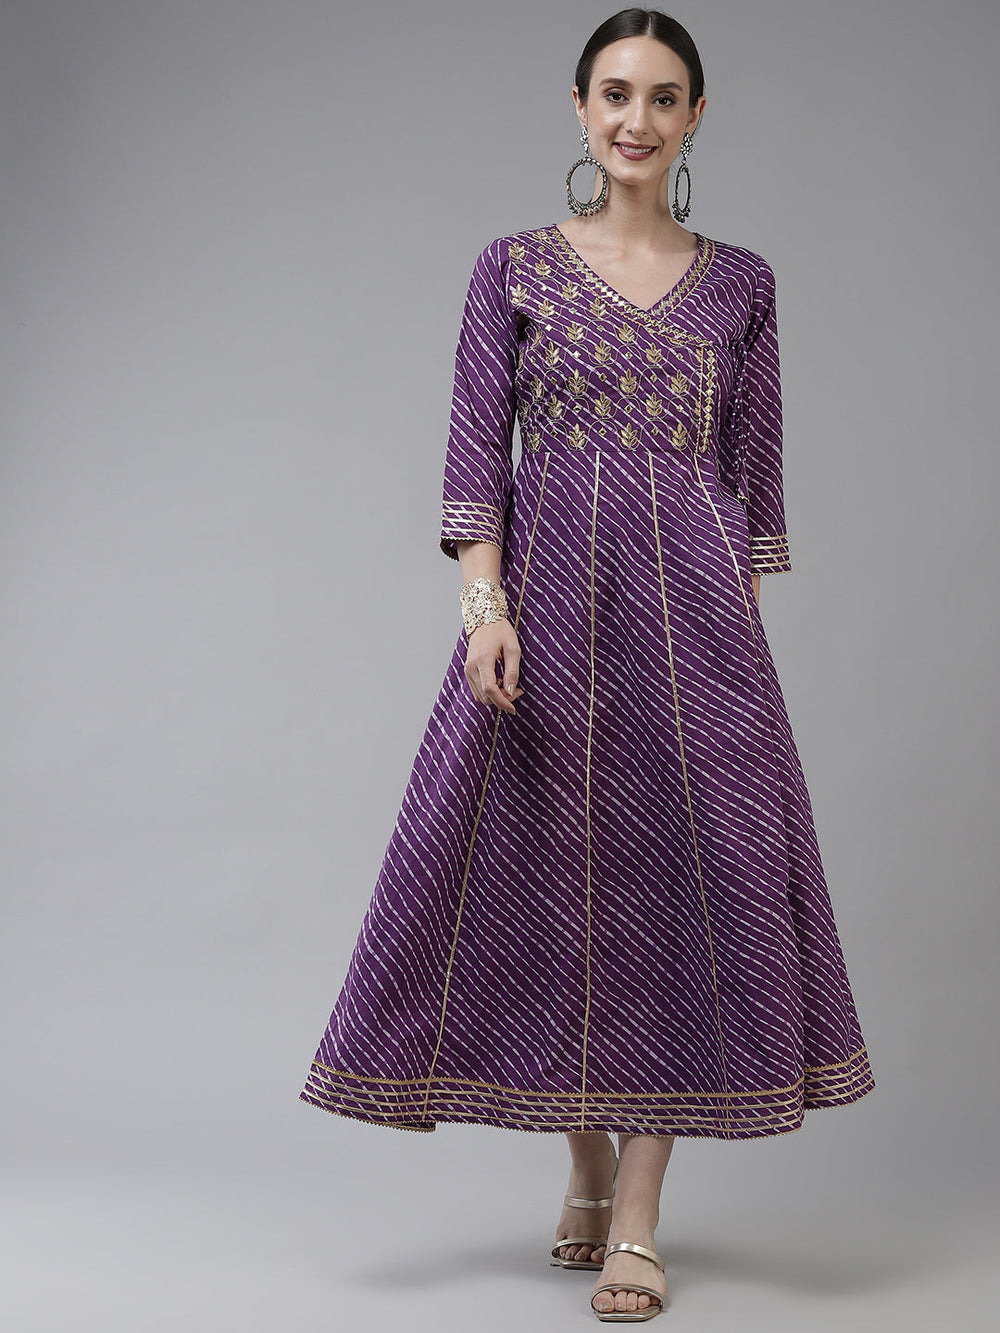 Purple Ethnic Motifs Maxi Dress-Yufta Store-9778DRSPRS